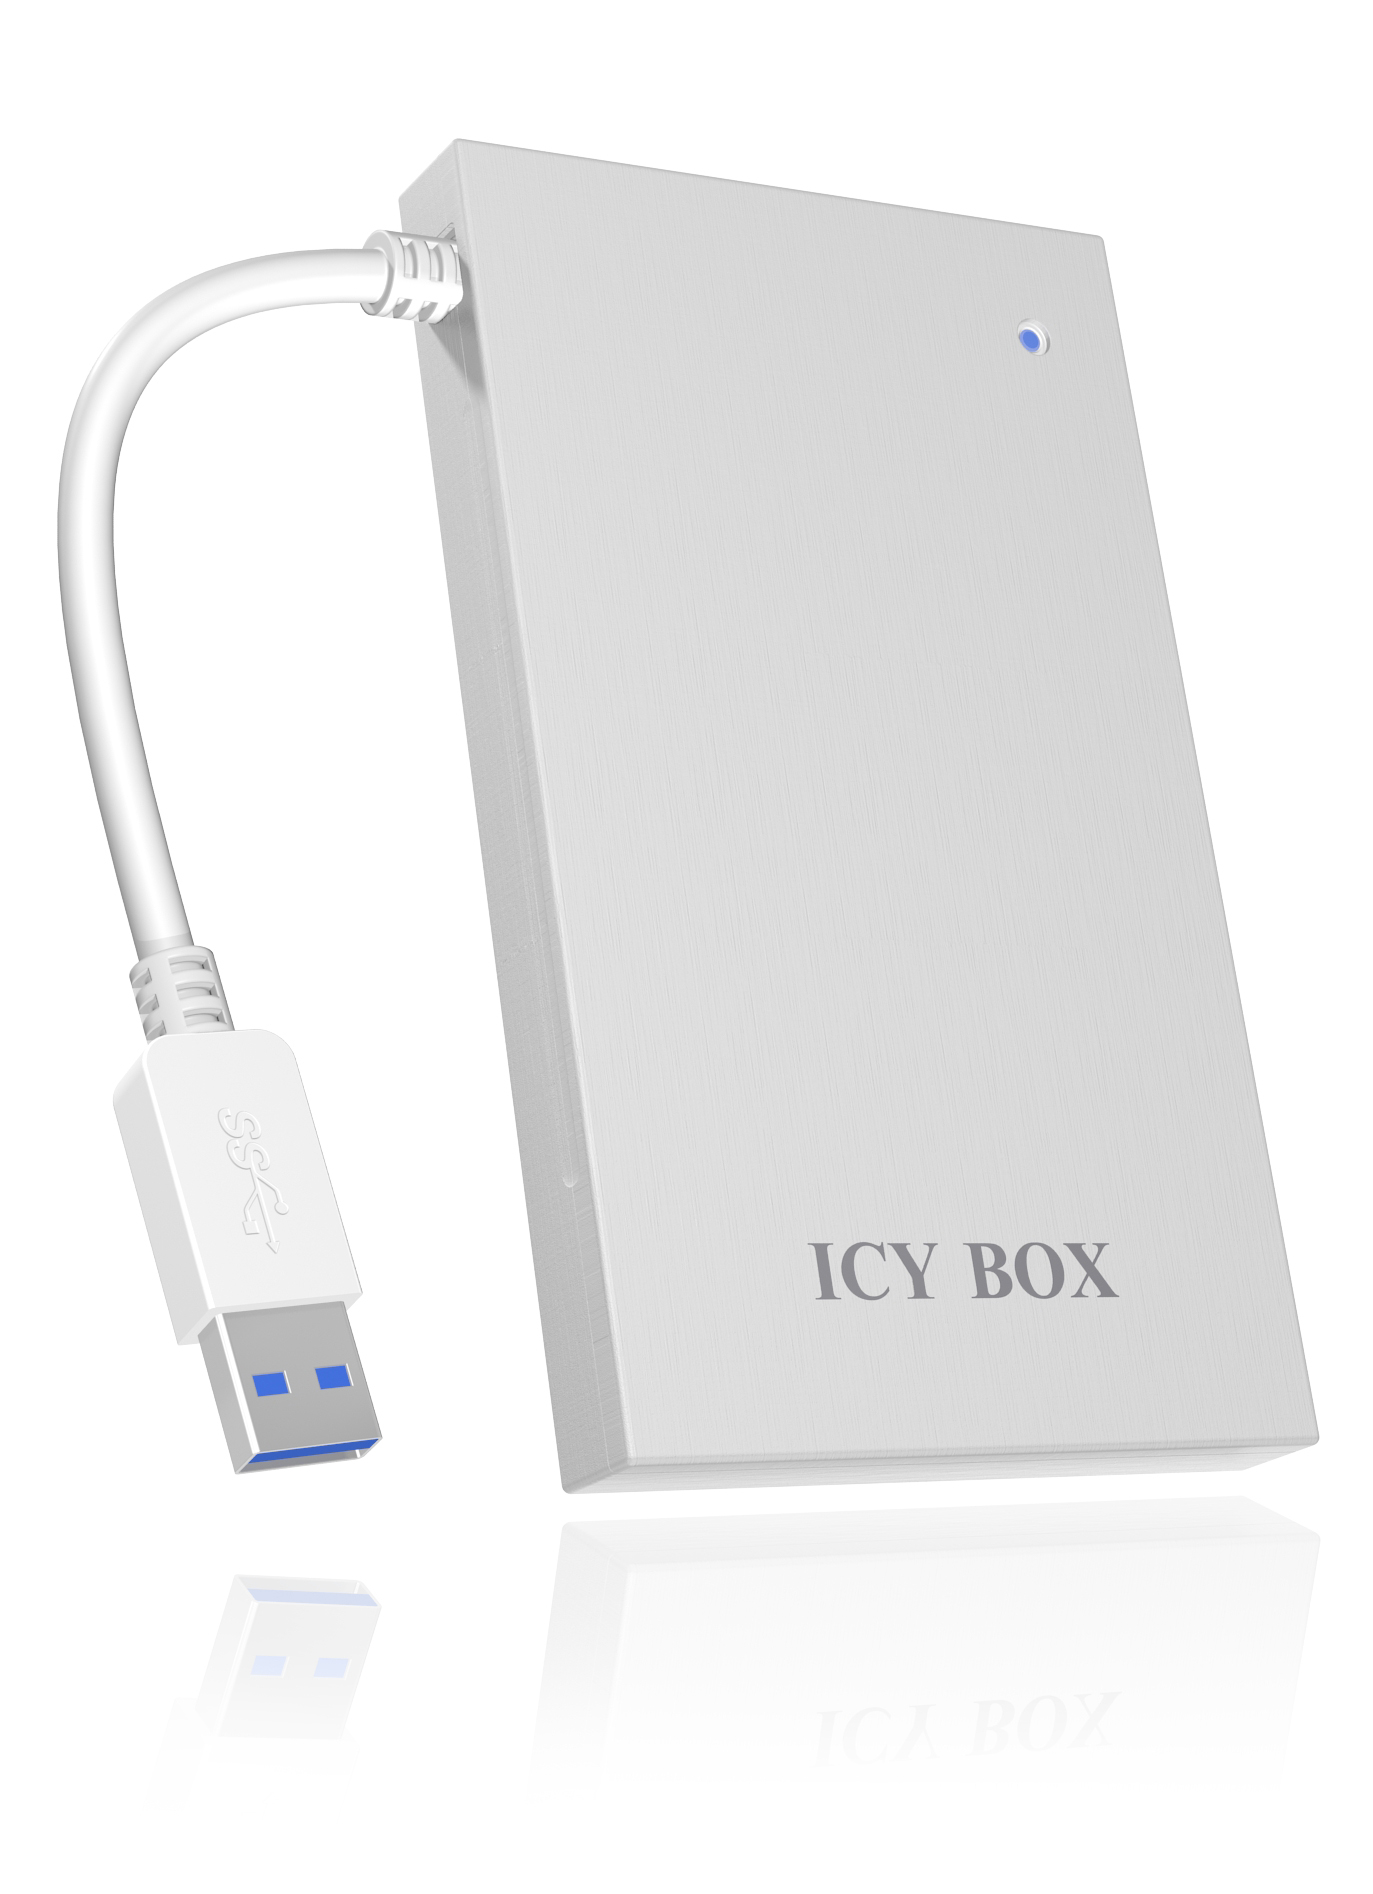 ICY BOX IB-AC 6034-U3 ICY, Silber